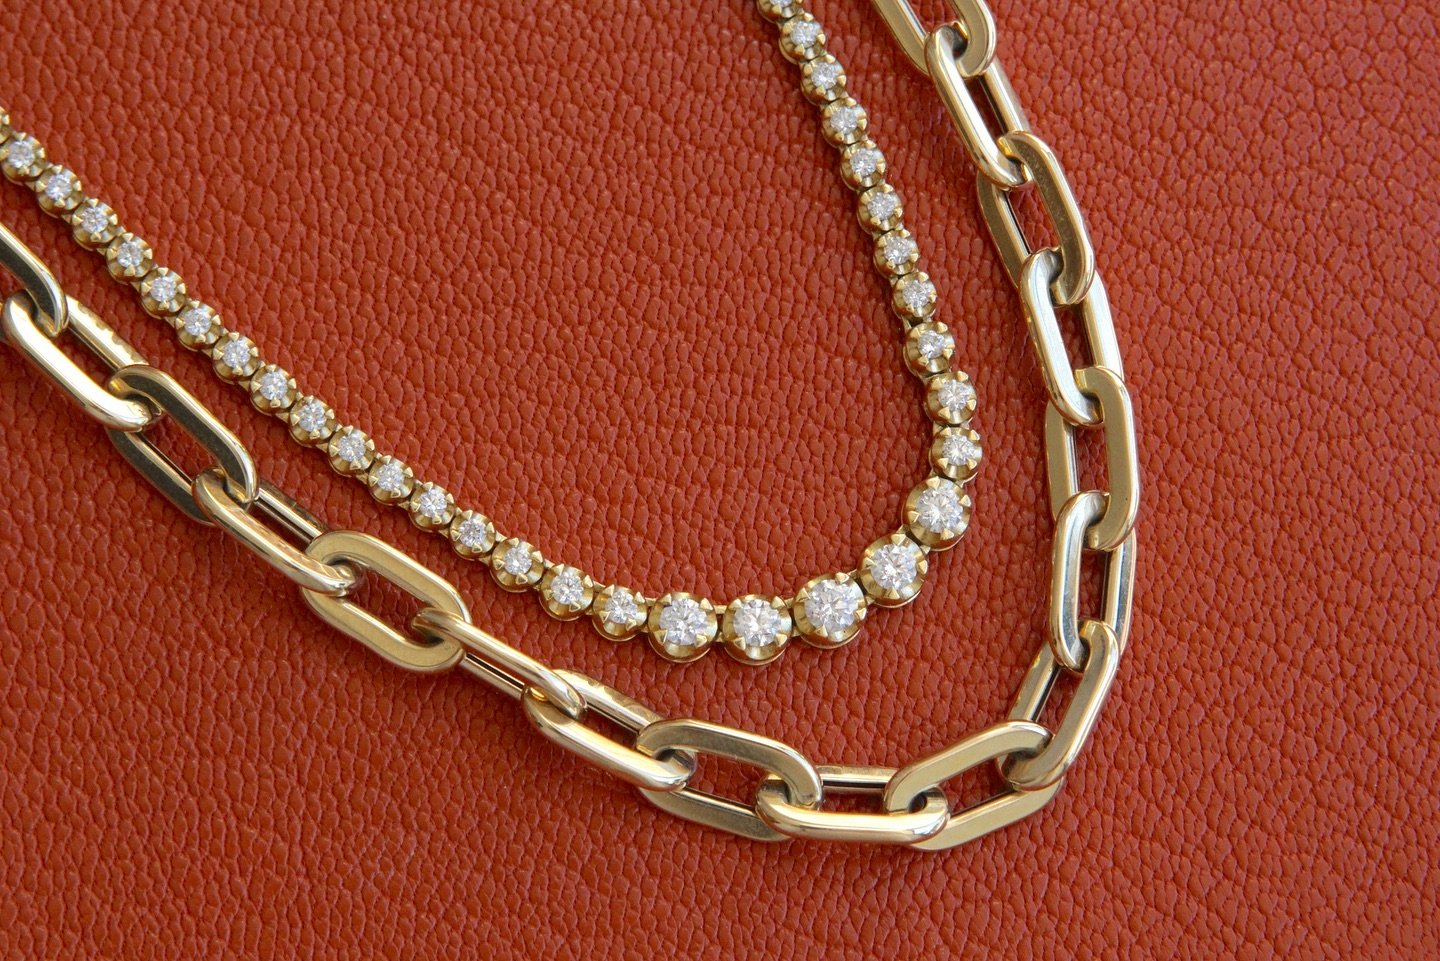 Gold + Diamonds = 💕
💎
#Jewelry #JewelryDesigner #JewelryGram #JewelryAddict #JewelryLovers #LuxuryJewelry #InstaJewelry #JewelryGoals #JewelryTrends #JewelryMaking #JewelryOfTheDay #BespokeJewelry #StatementJewelry #BridalJewelry